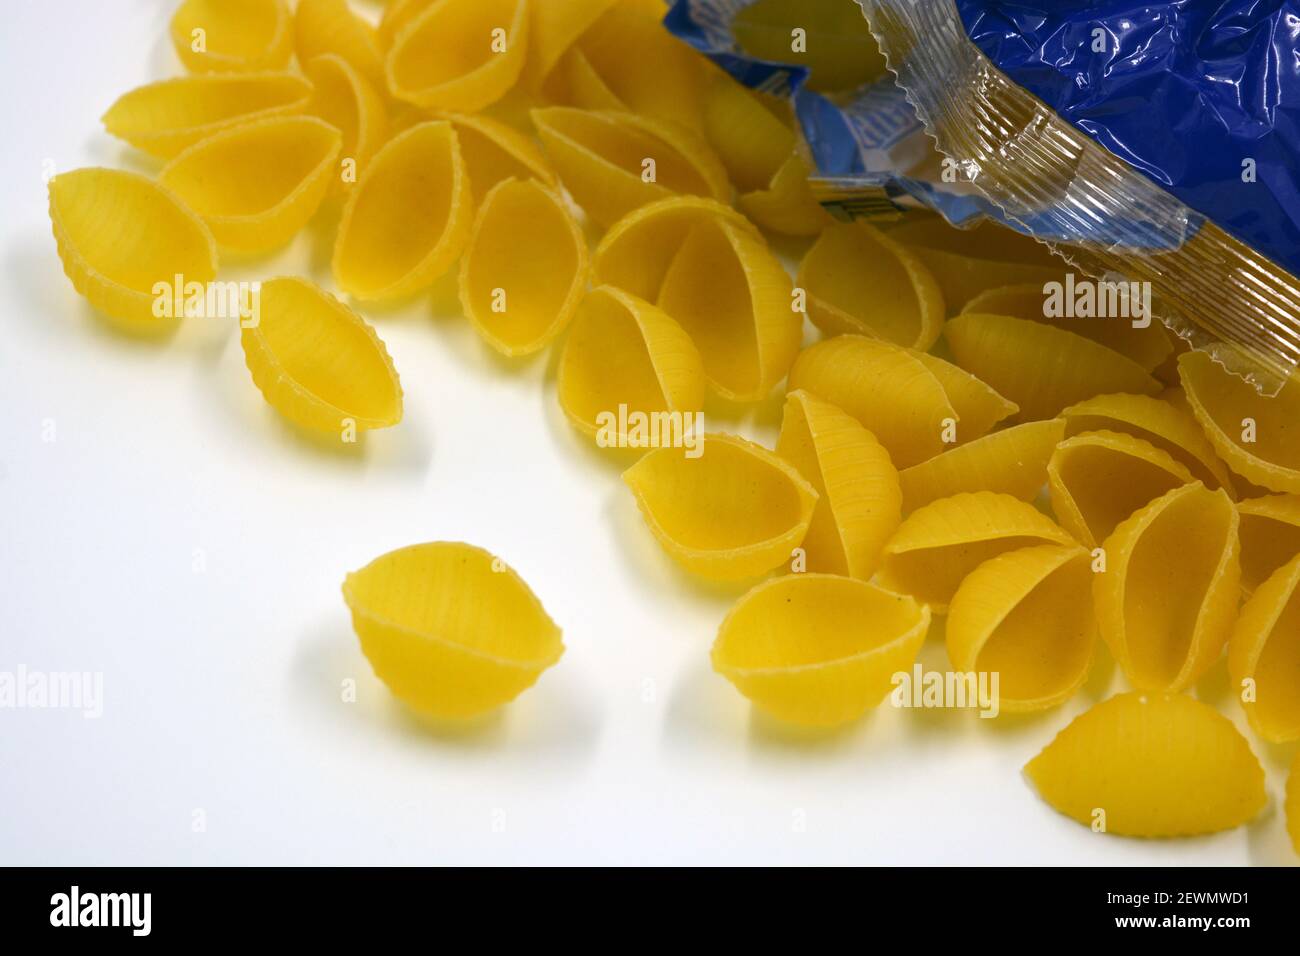 Trockene gelbe italienische Vermicelli, Pasta von Wwkushi Muschelschalen aus Vollkornsorten, befinden sich auf weißem Hintergrund. Stockfoto